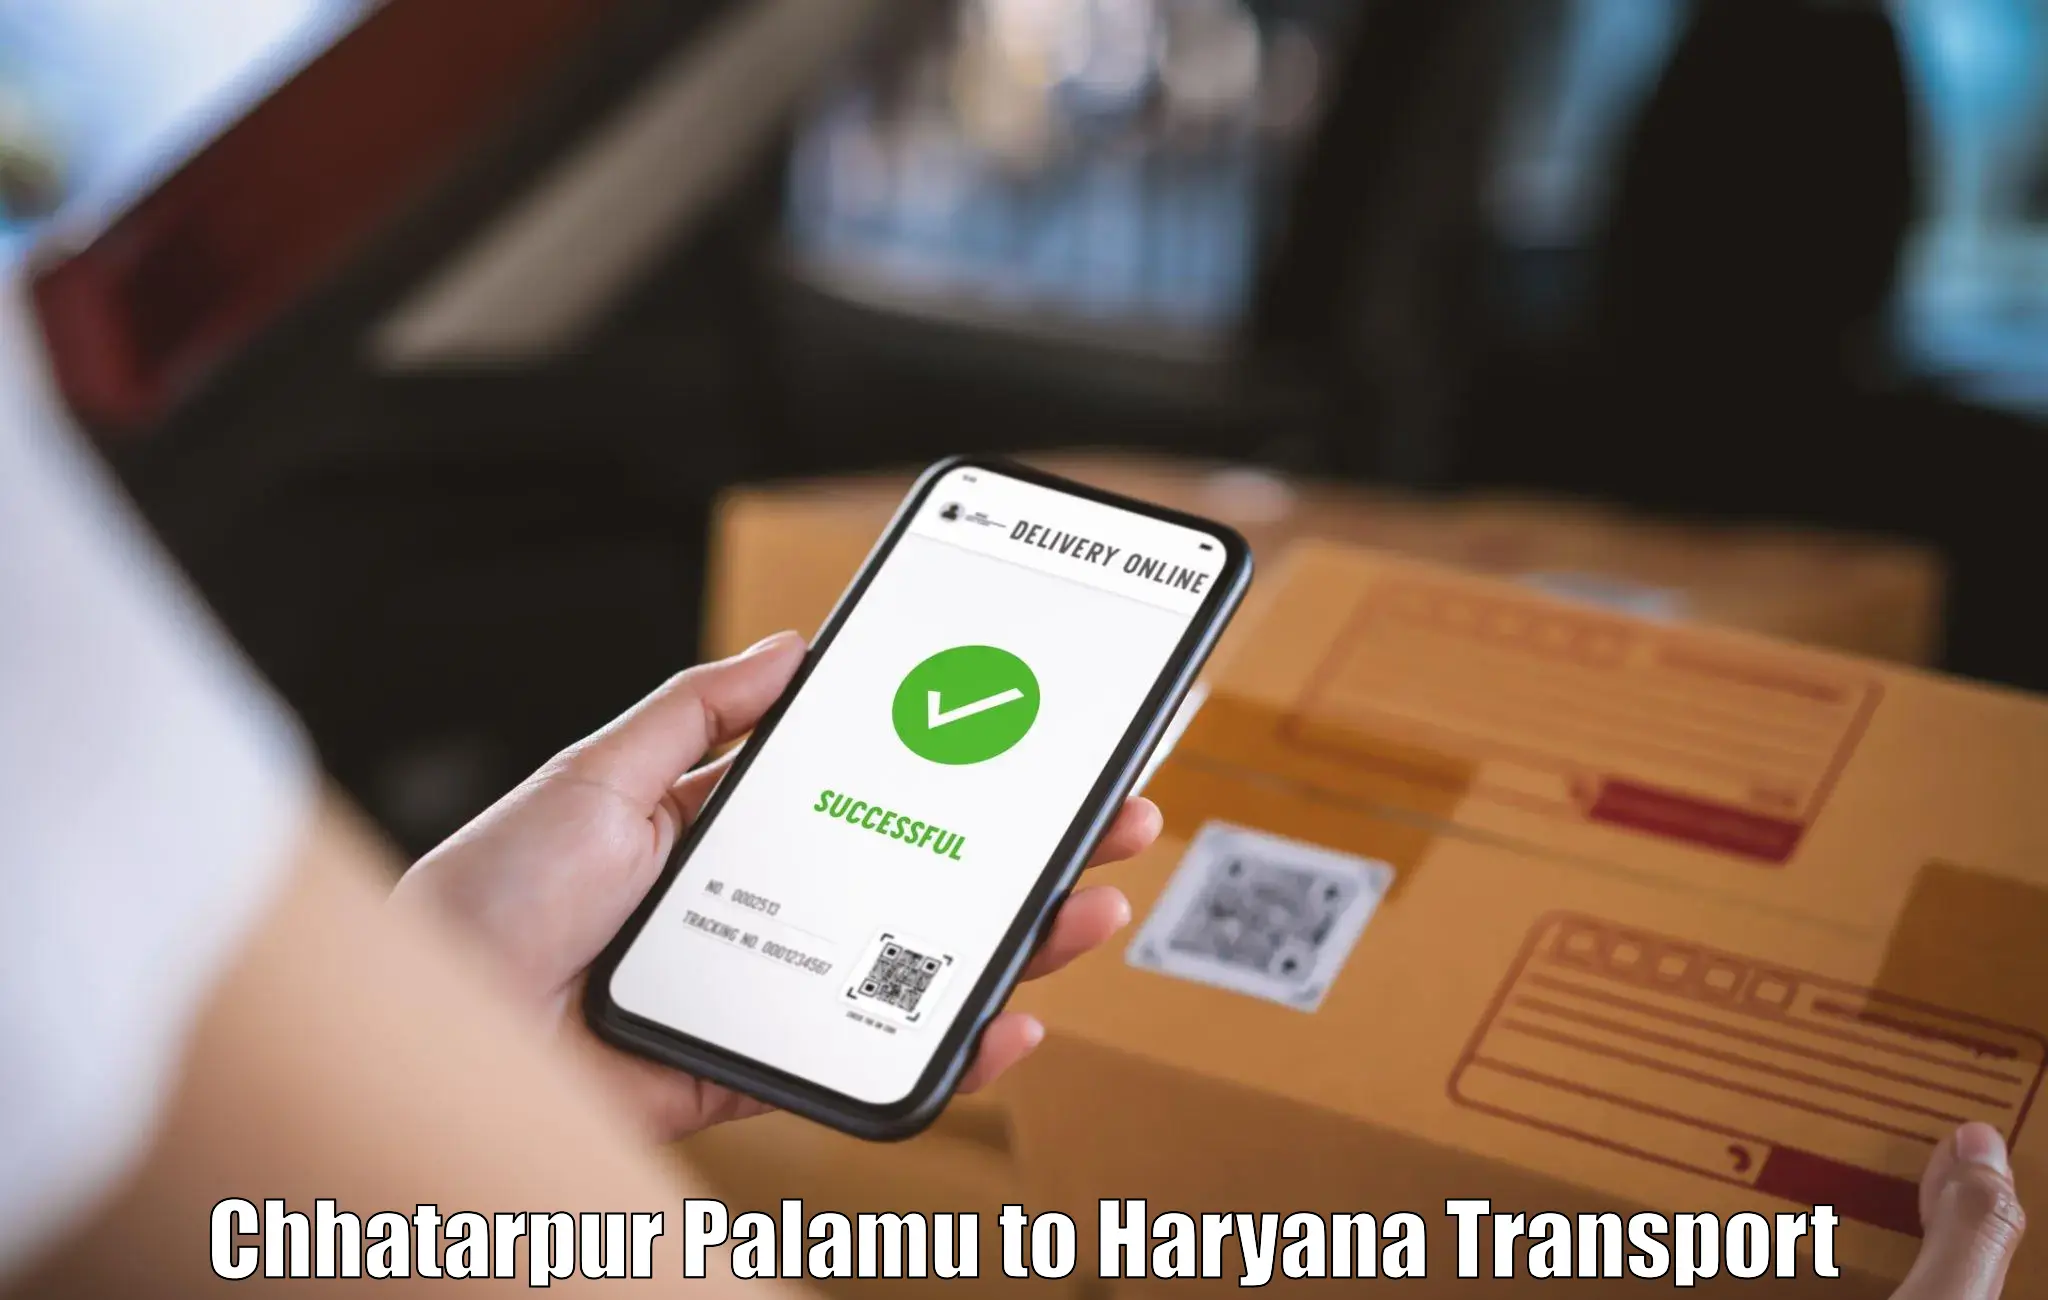 Cargo transportation services Chhatarpur Palamu to NIT Kurukshetra